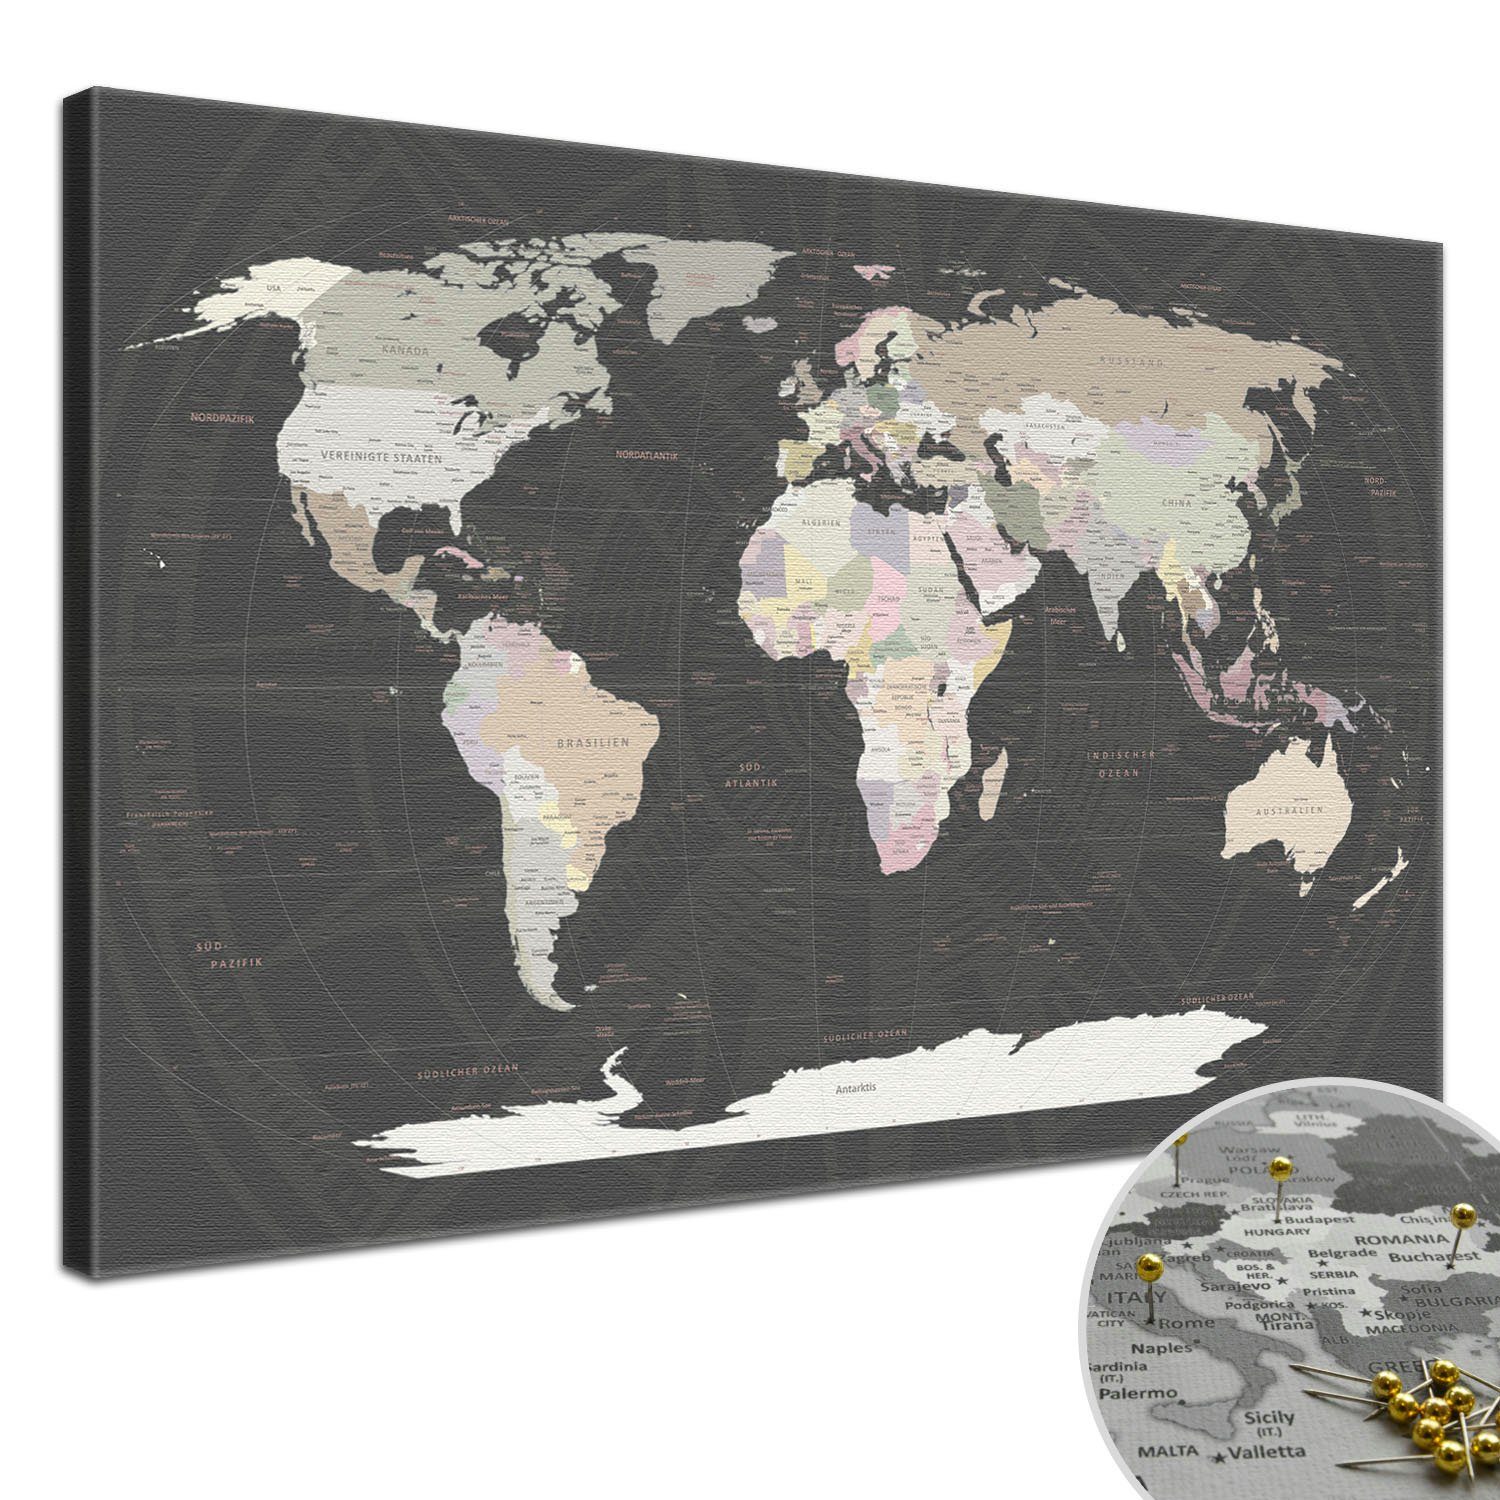 Leinwandbild KK zum markieren Grey von Reisezielen, LANA Pinnwand deutsche Beschriftung Weltkarte